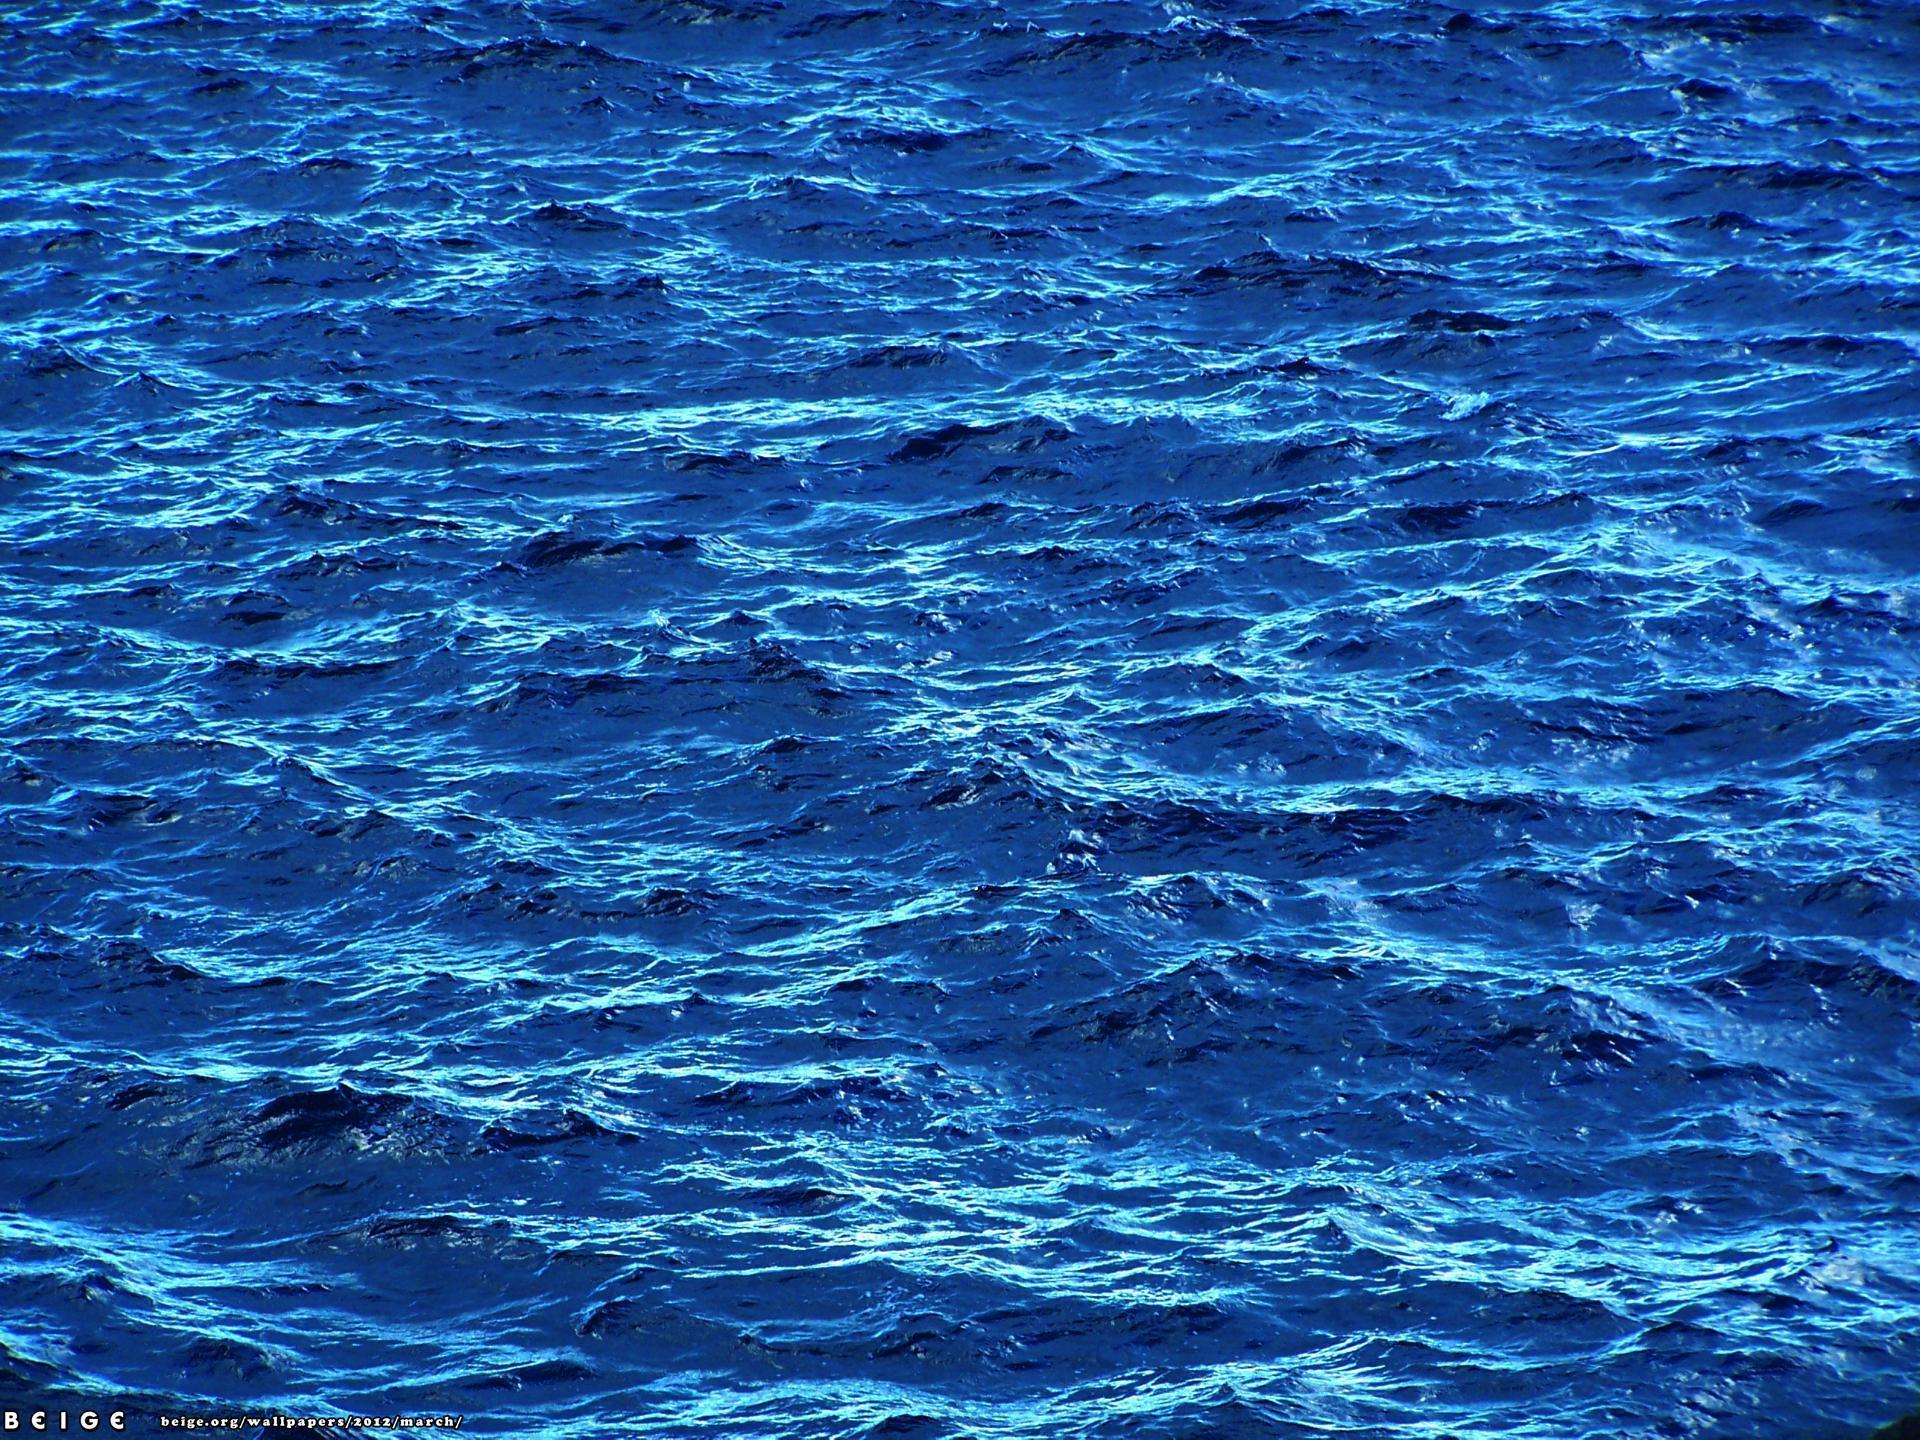 72+] Blue Ocean Wallpaper - WallpaperSafari